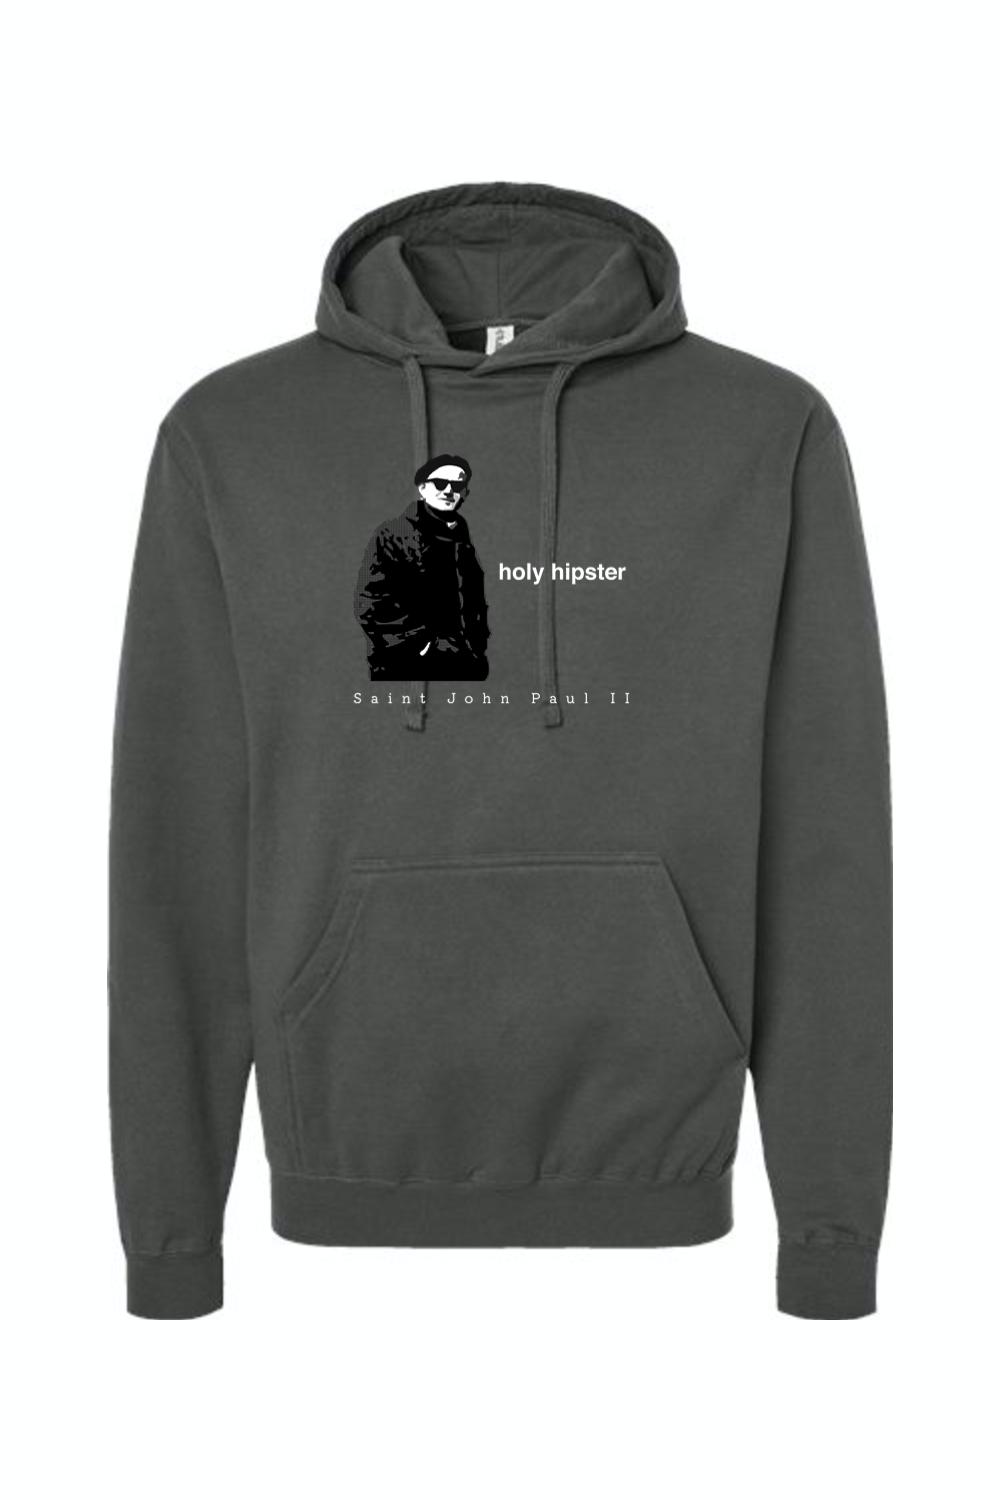 Holy Hipster - St. John Paul II Hoodie Sweatshirt